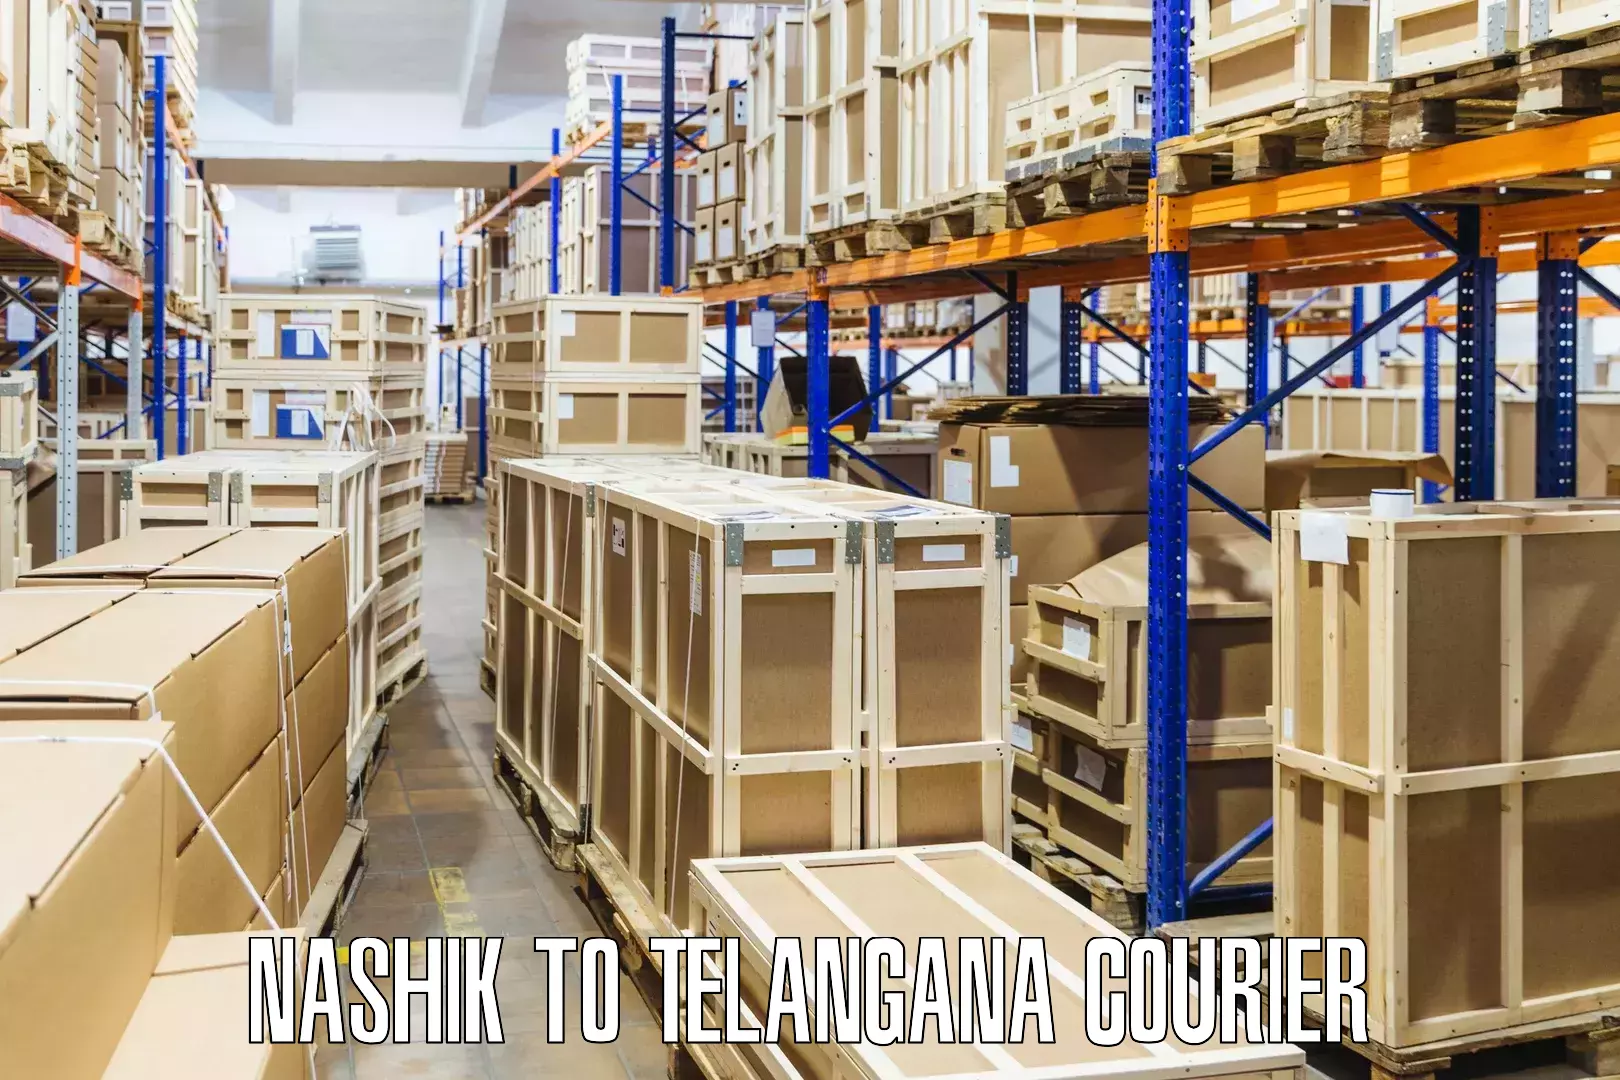 Integrated shipping systems Nashik to Telangana